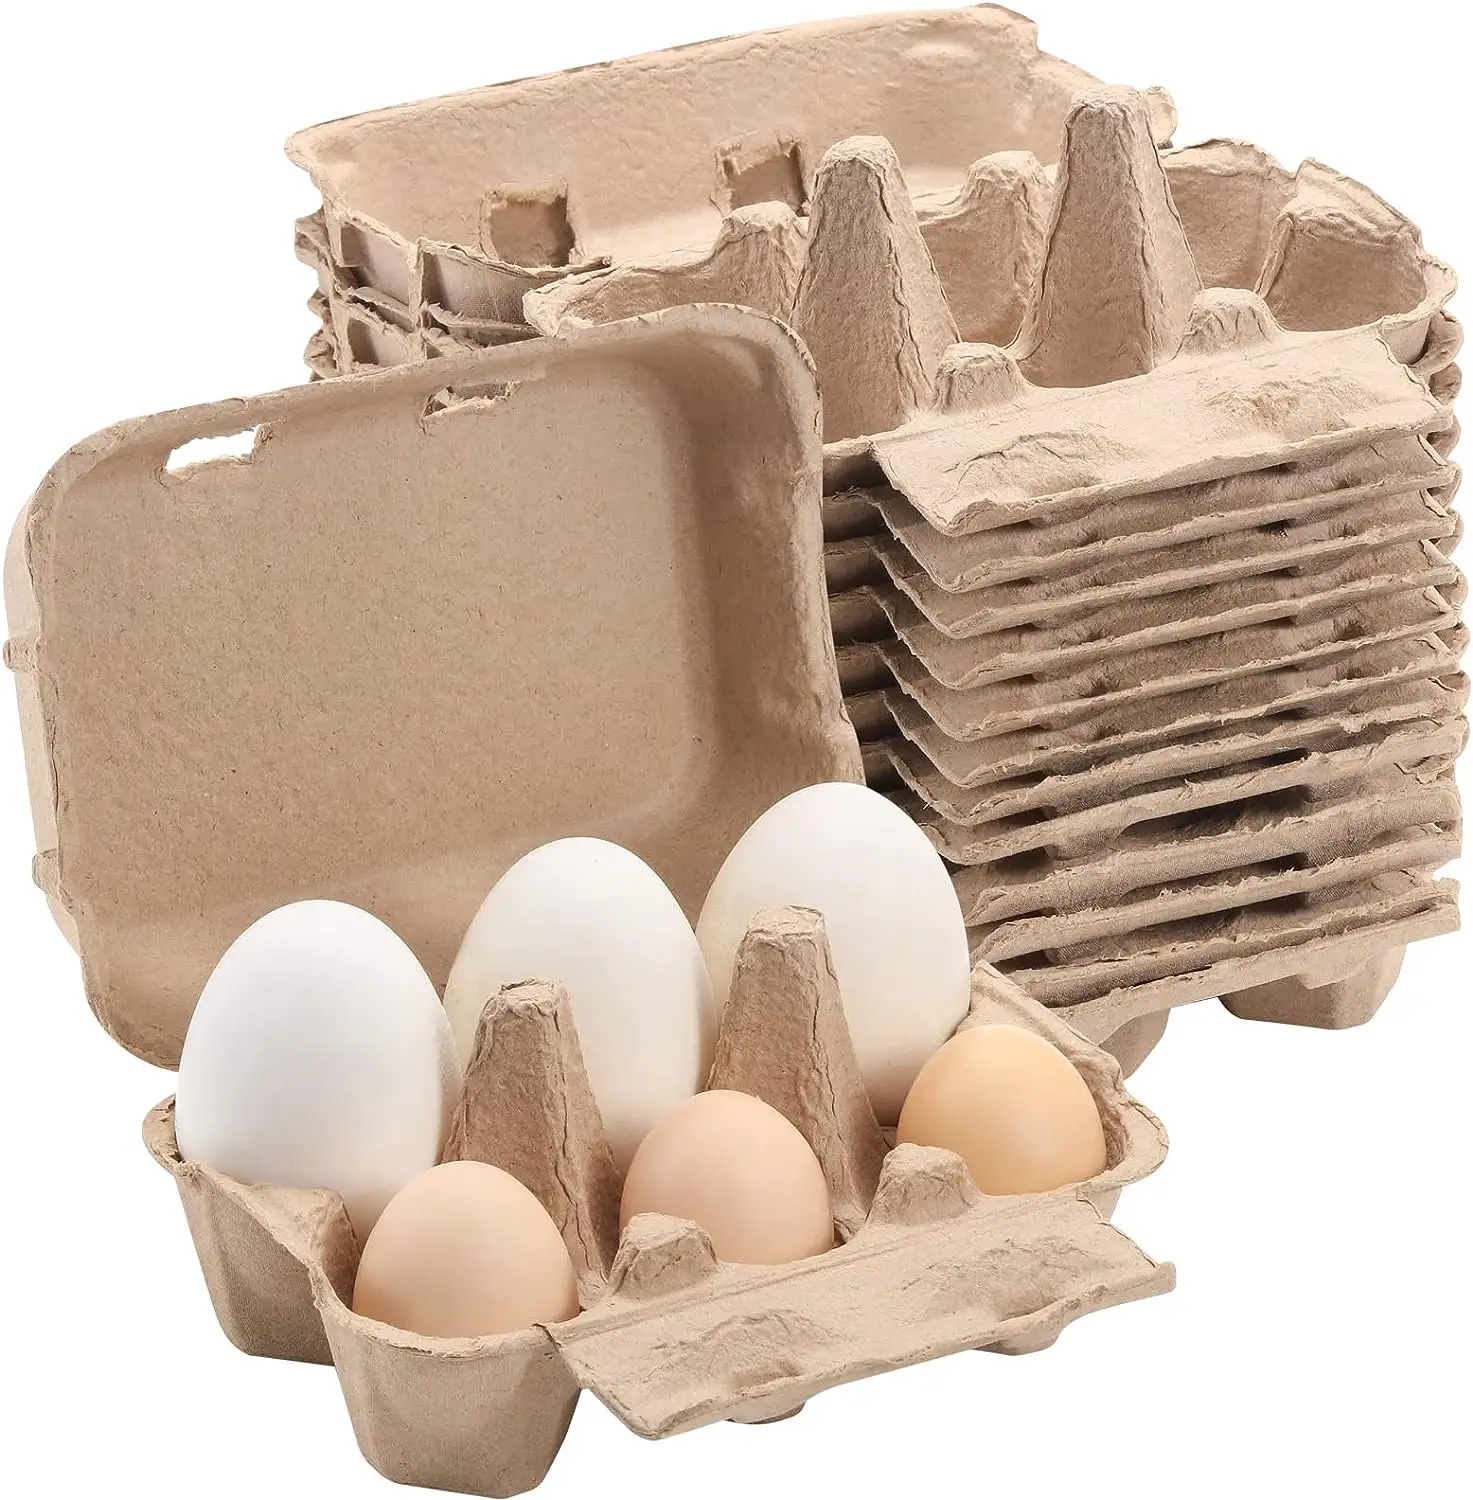 Colorido Meia Dúzia Caixas De Ovos 20 Pcs/Set, Caixas De Ovos De Papel Celulose Natural 6 Contagem para Ovos De Galinha Reutilizável 5 Cor Bandeja De Armazenamento